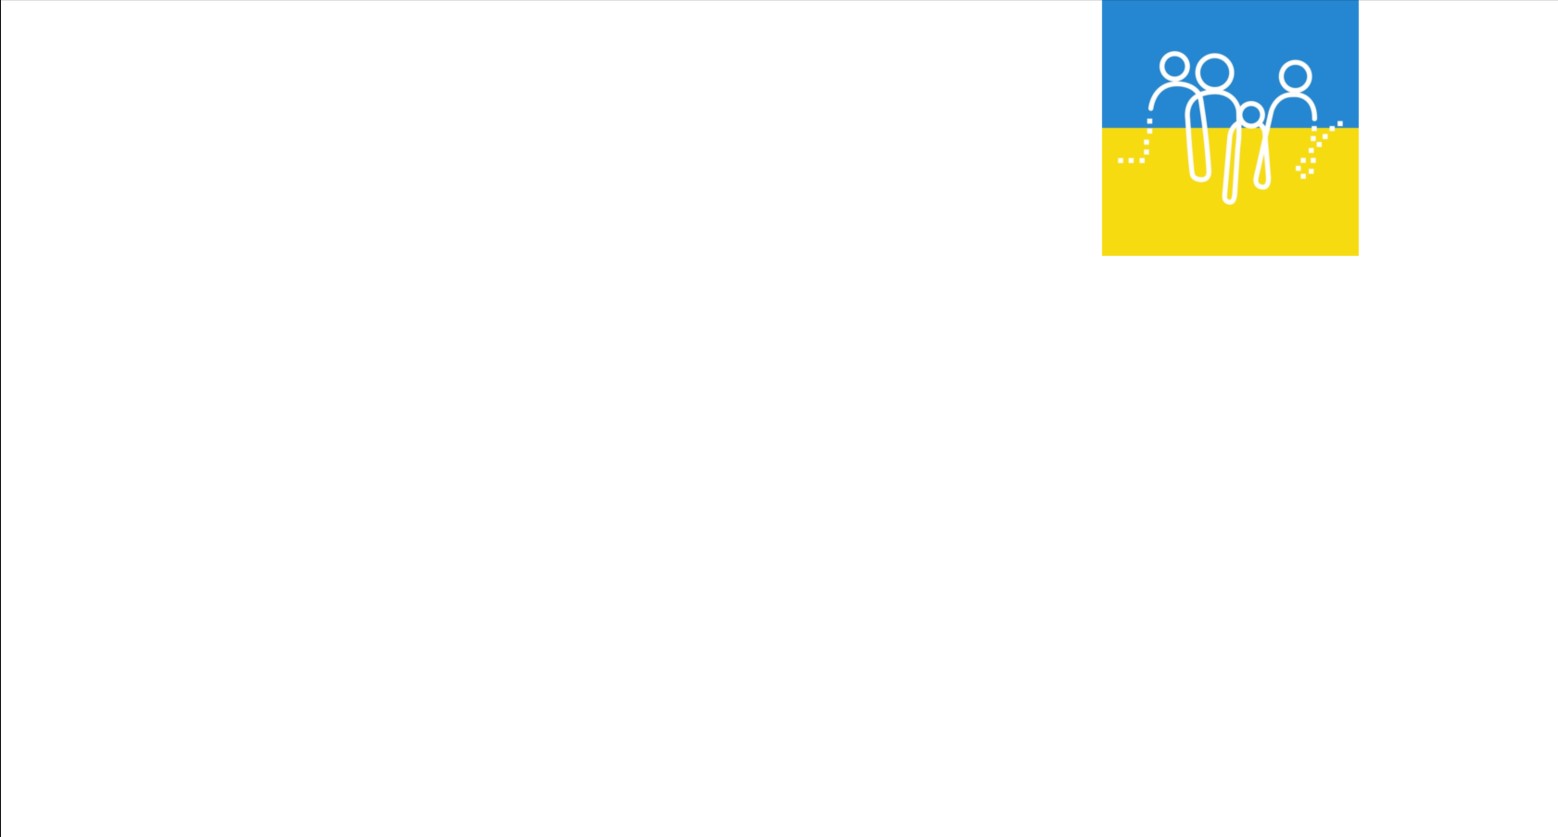 Logo SkbM in Farben der Ukraine Flagge